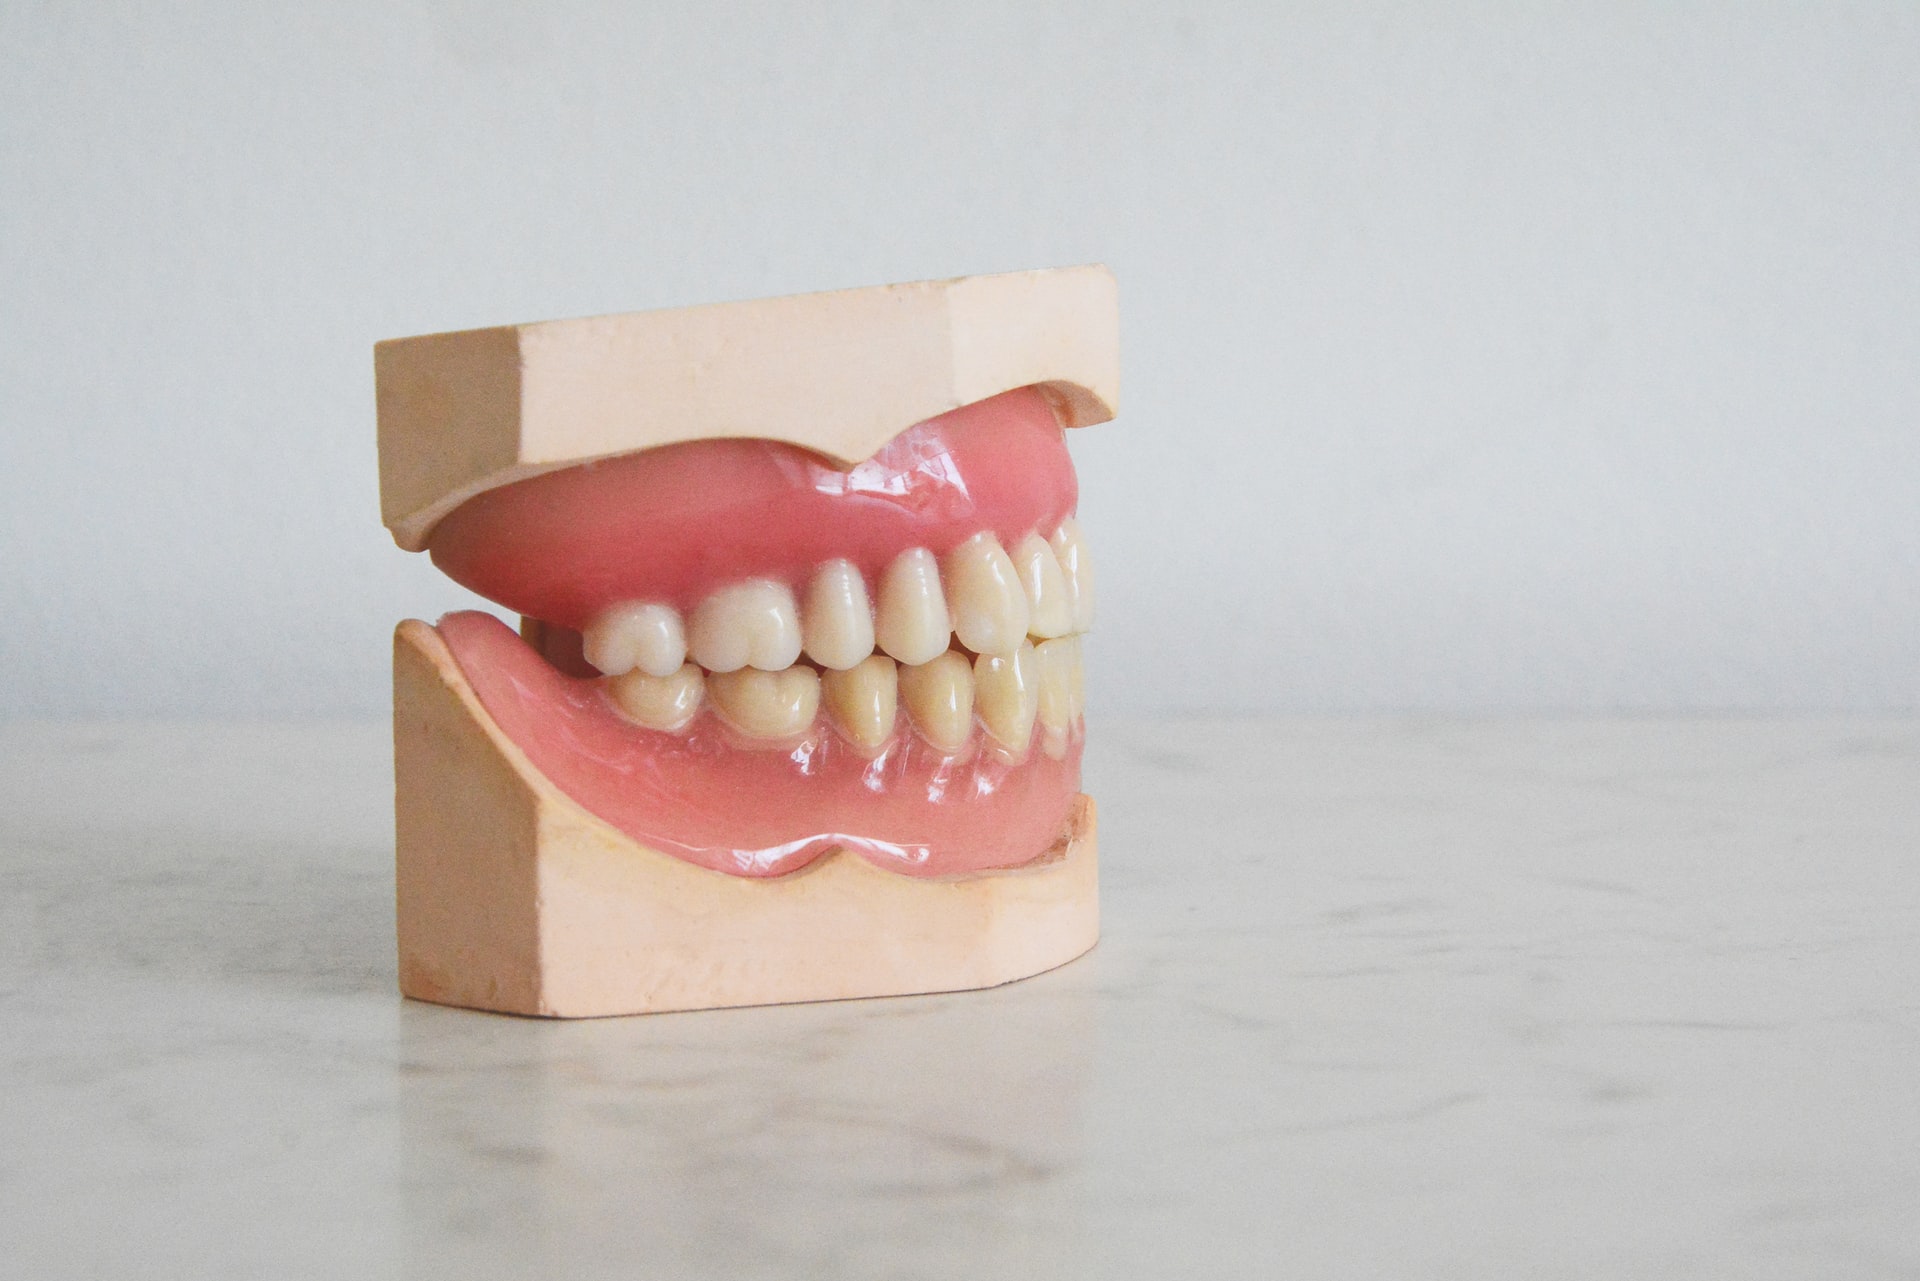 dental model of gums and teeth